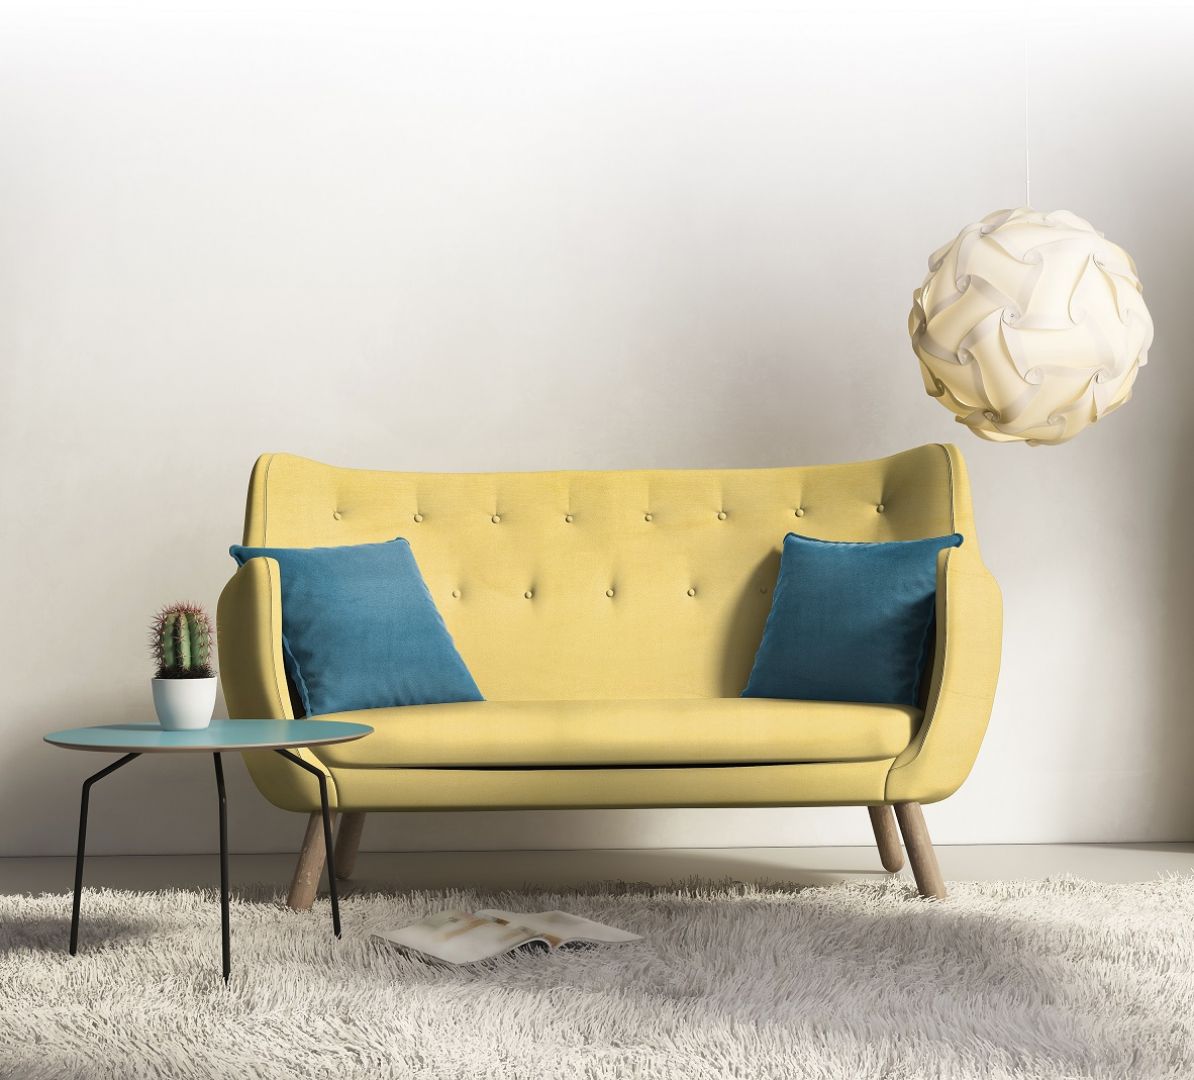 Sofa w żółtym kolorze ożywi wnętrze. Fot. Toptextil